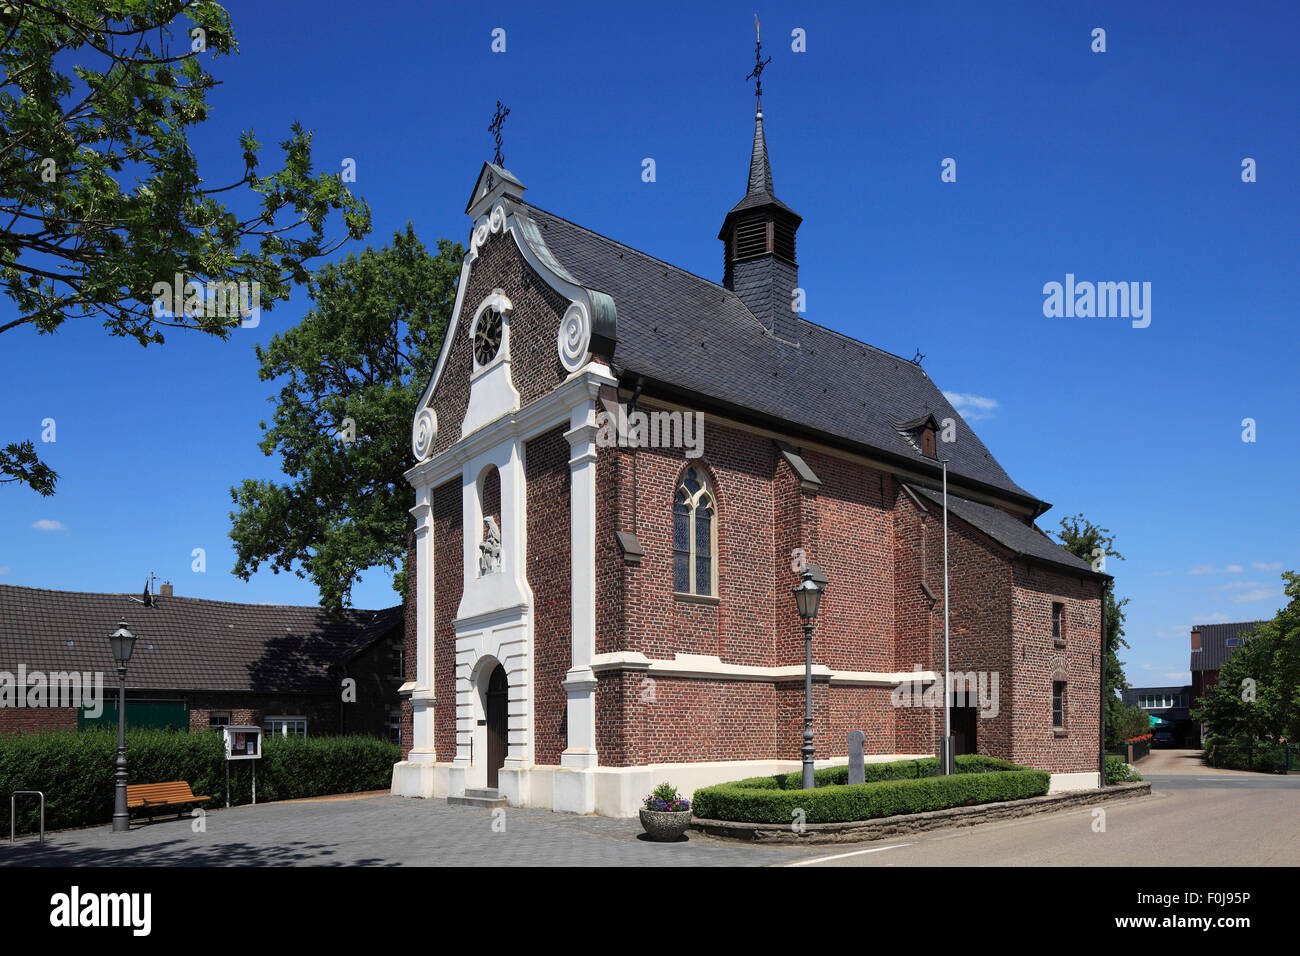 Wallfahrtskapelle Aengenesch, Geldern-Kapellen, Niederrhein, Nordrhein-Westfalen Stock Photo